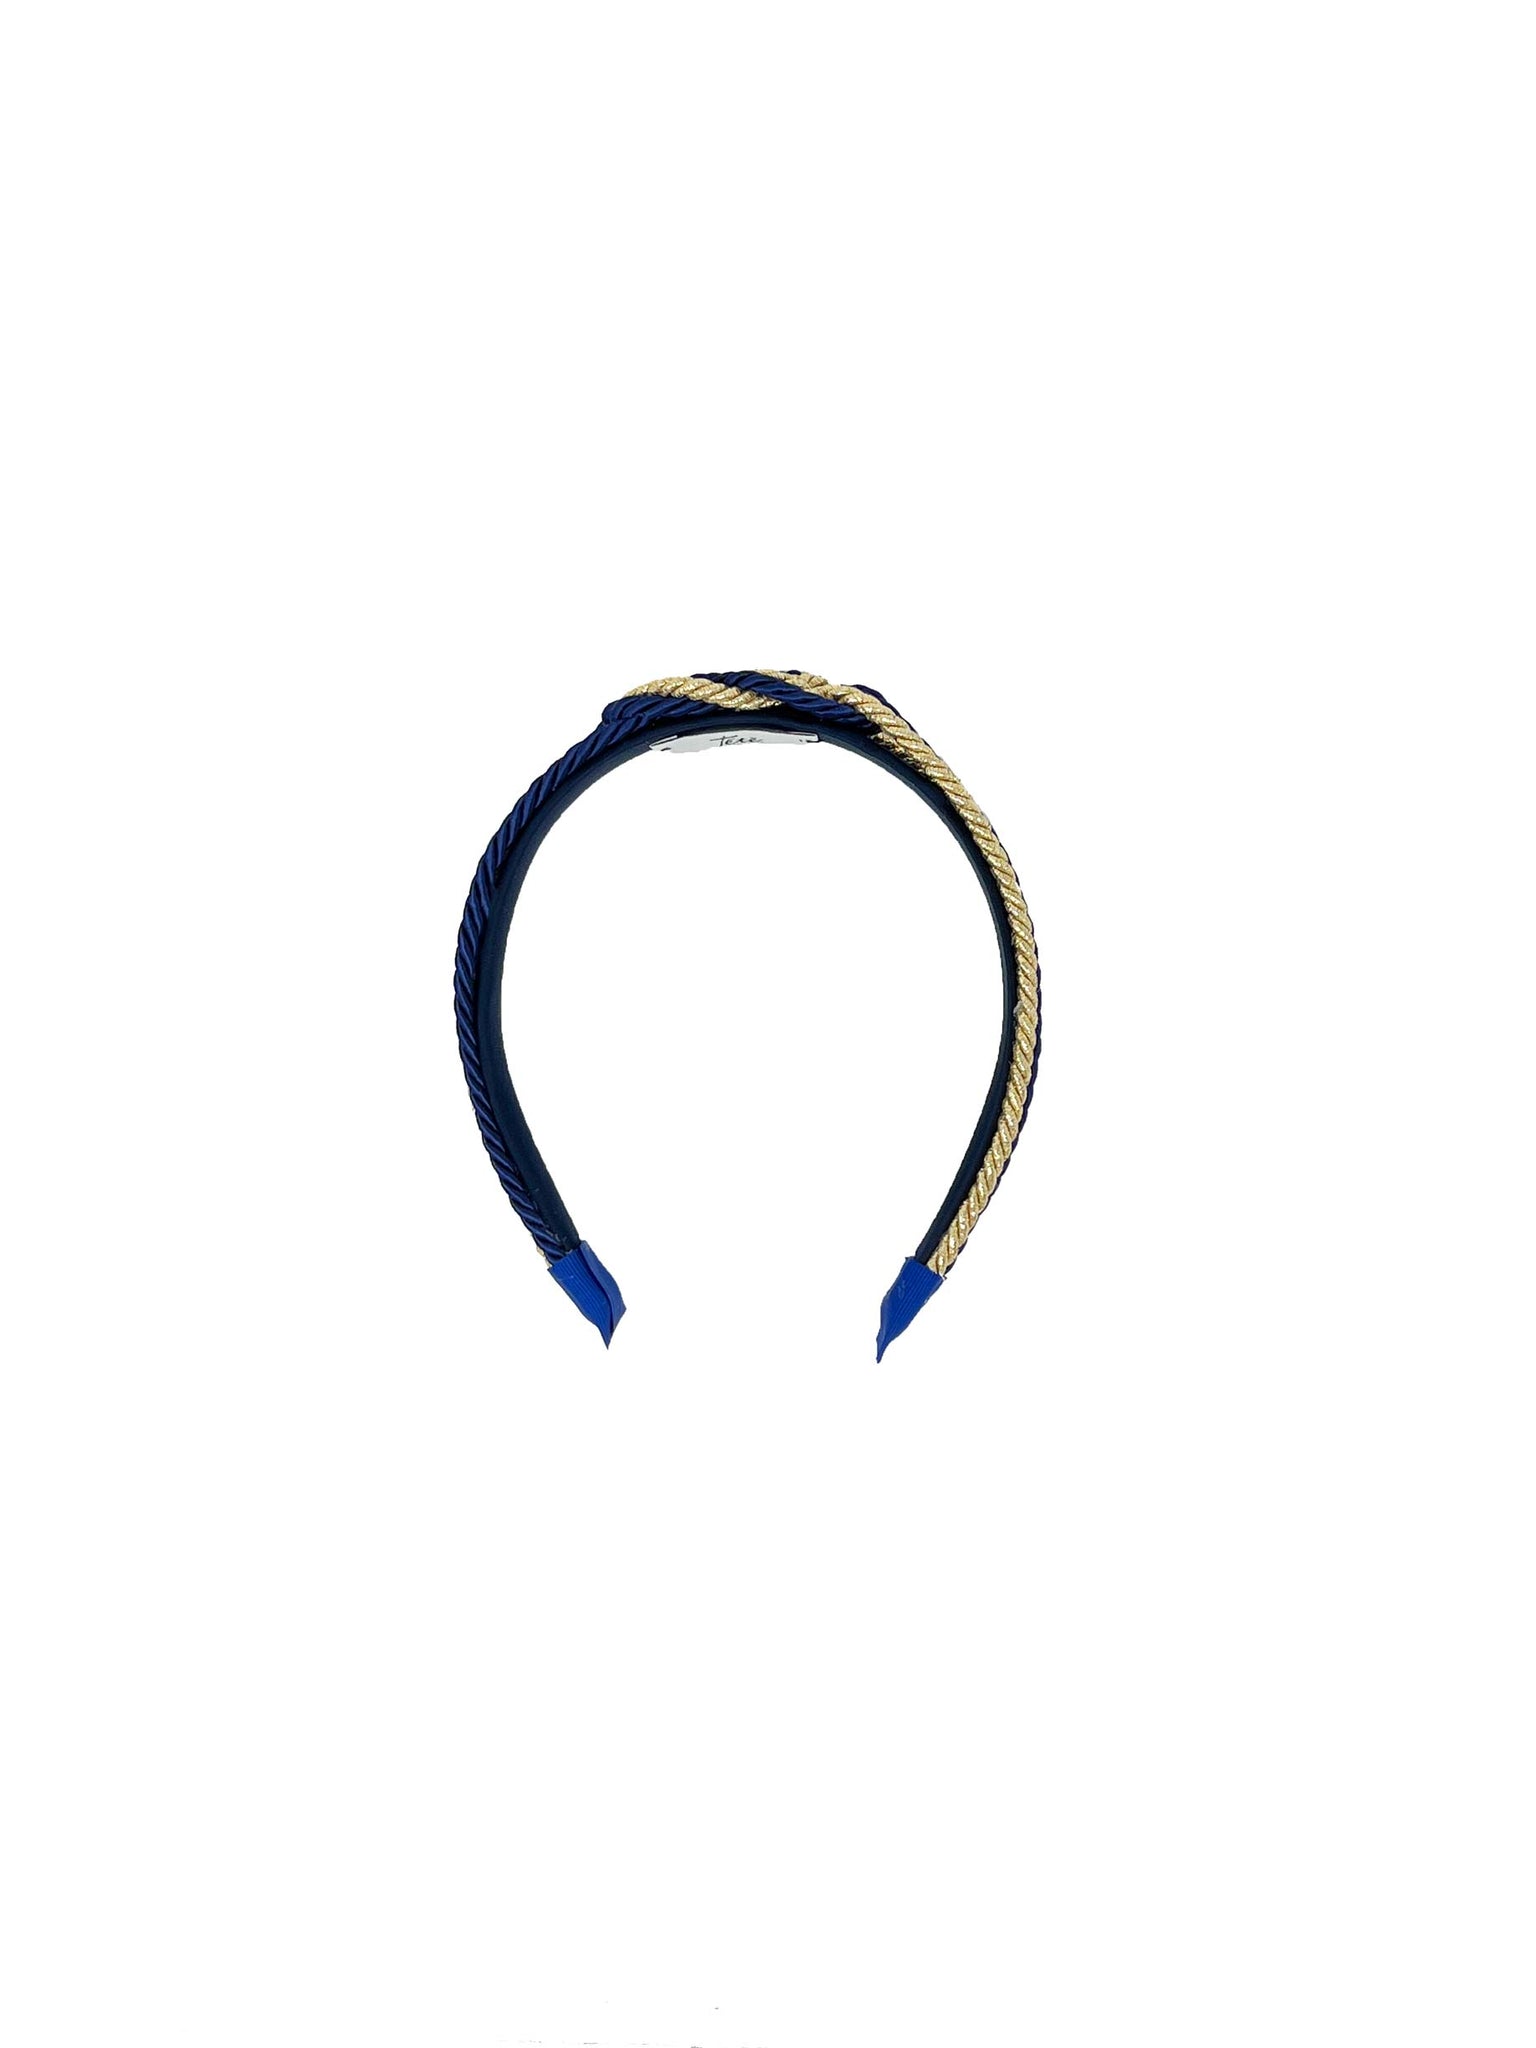 Cerchietto a tre fili blu e oro con nodo intrecciato centrale